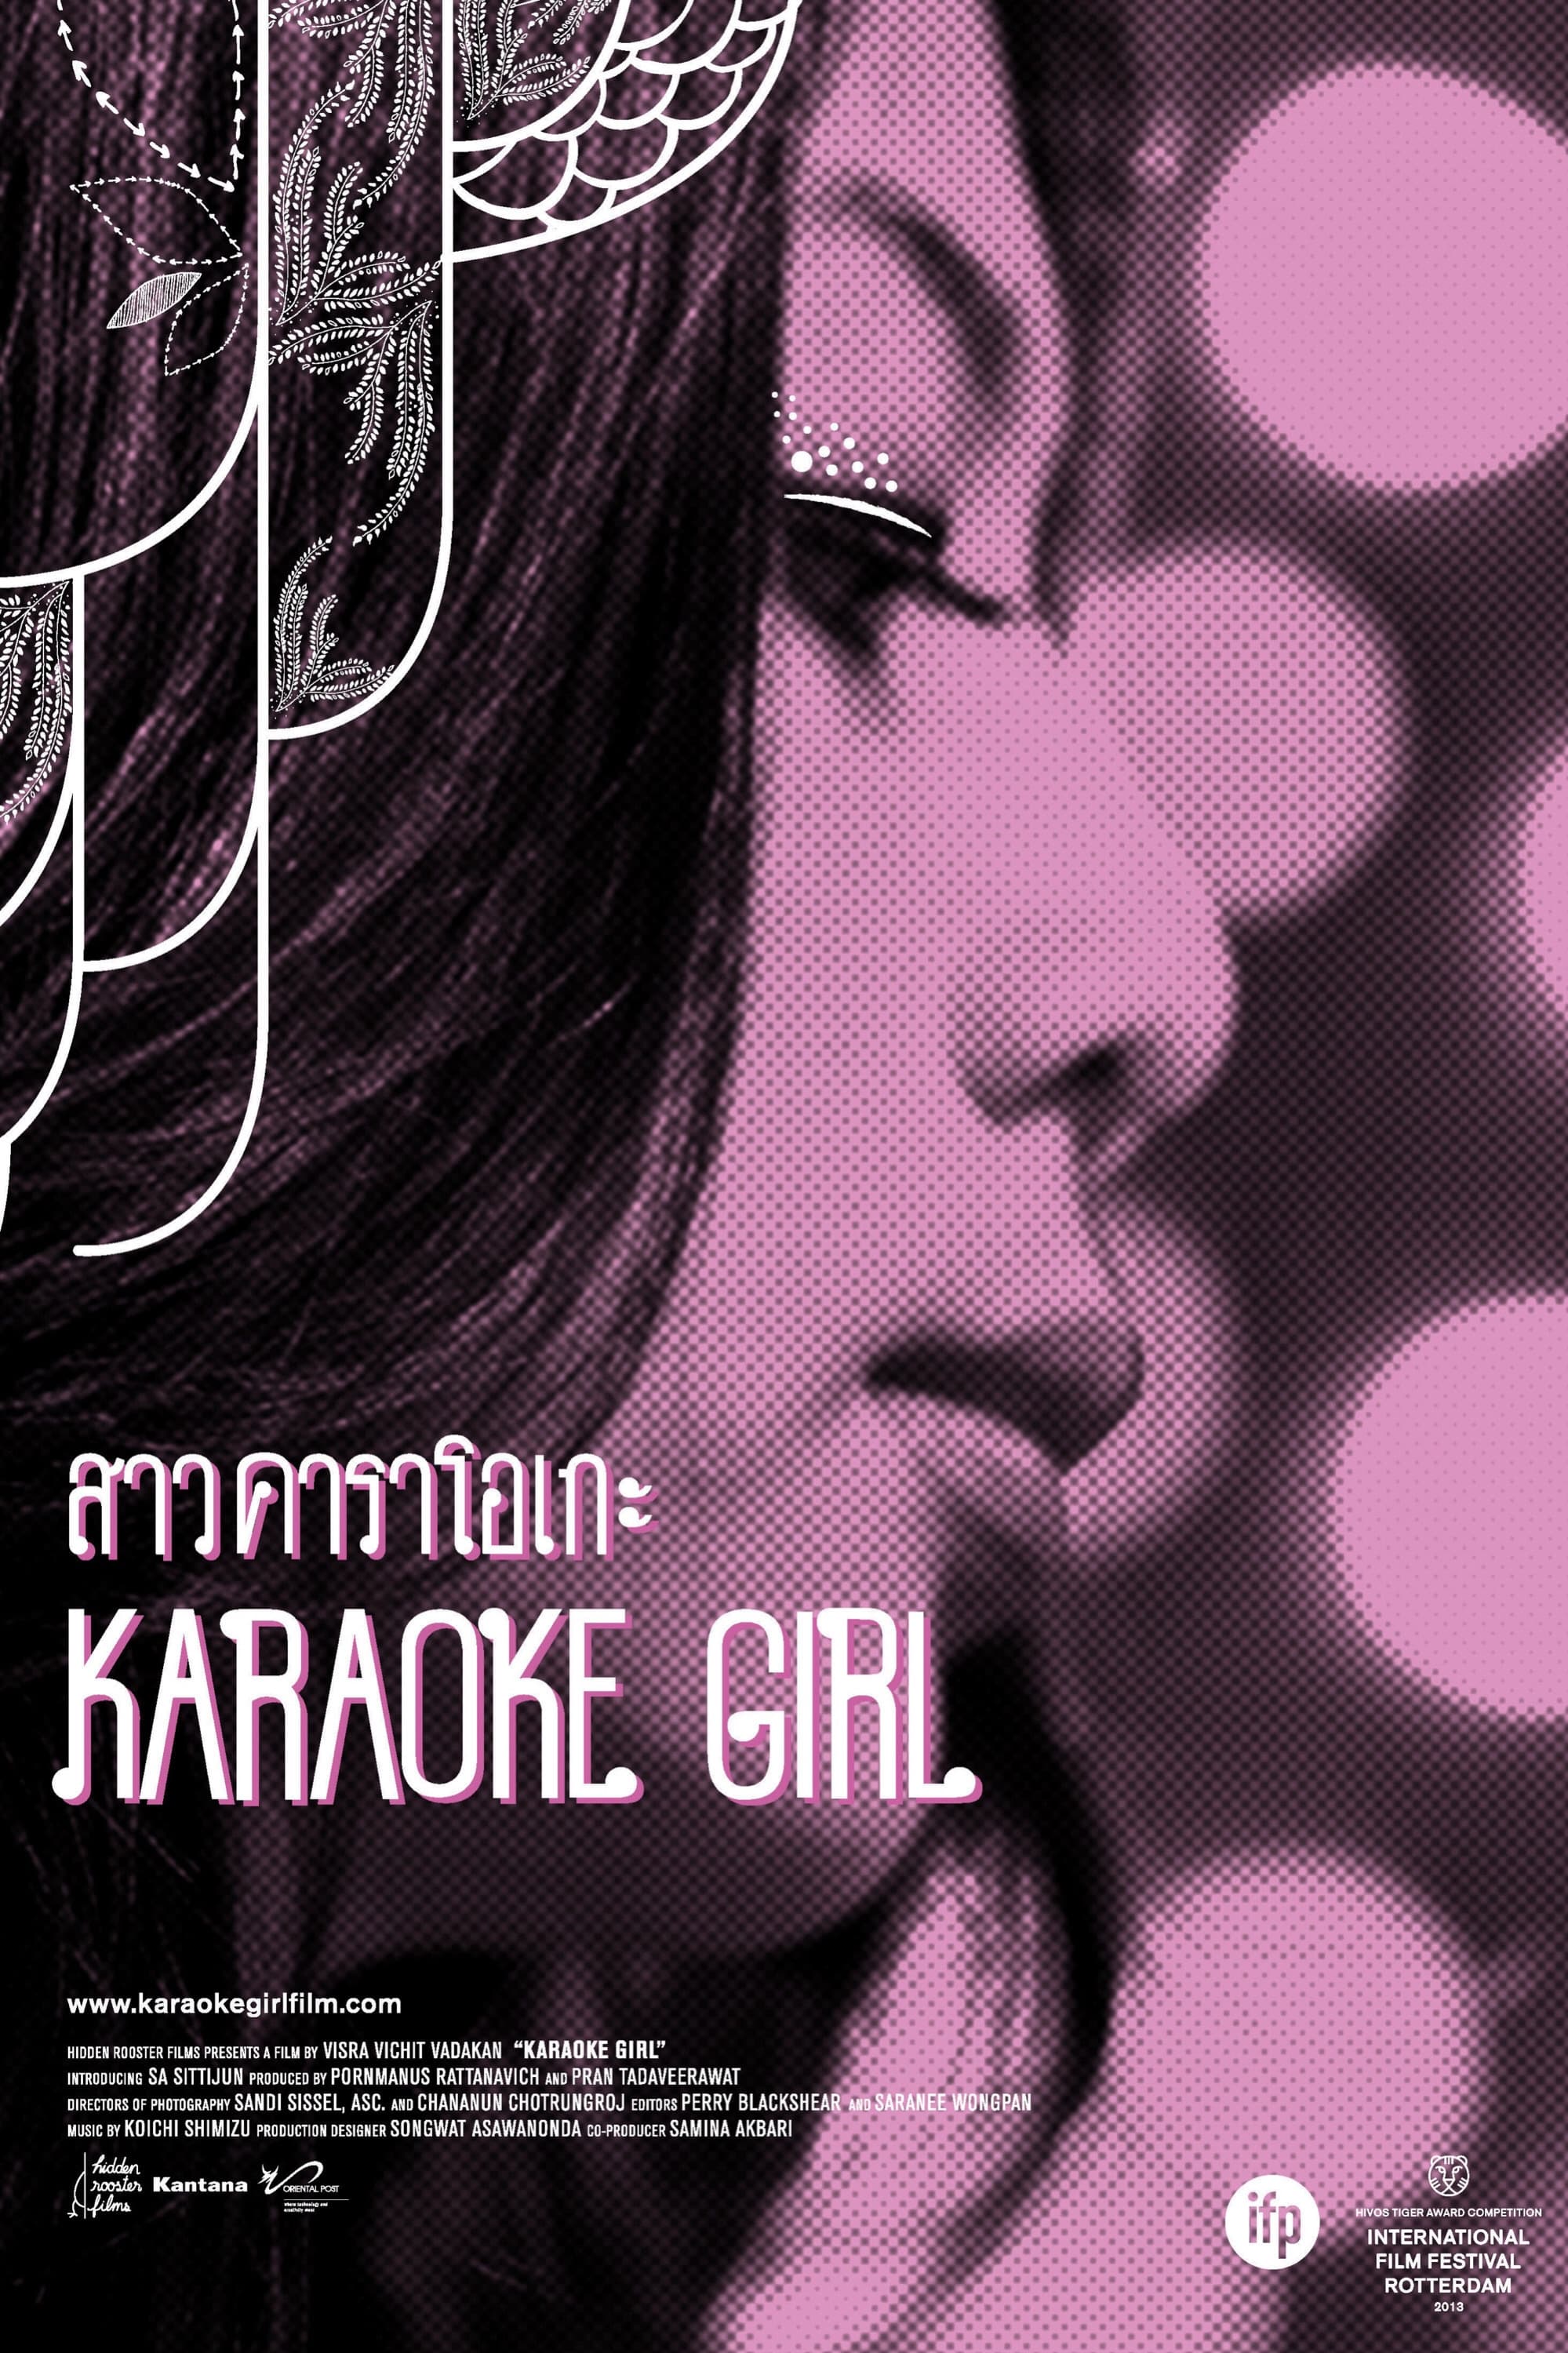 Karaoke Girl